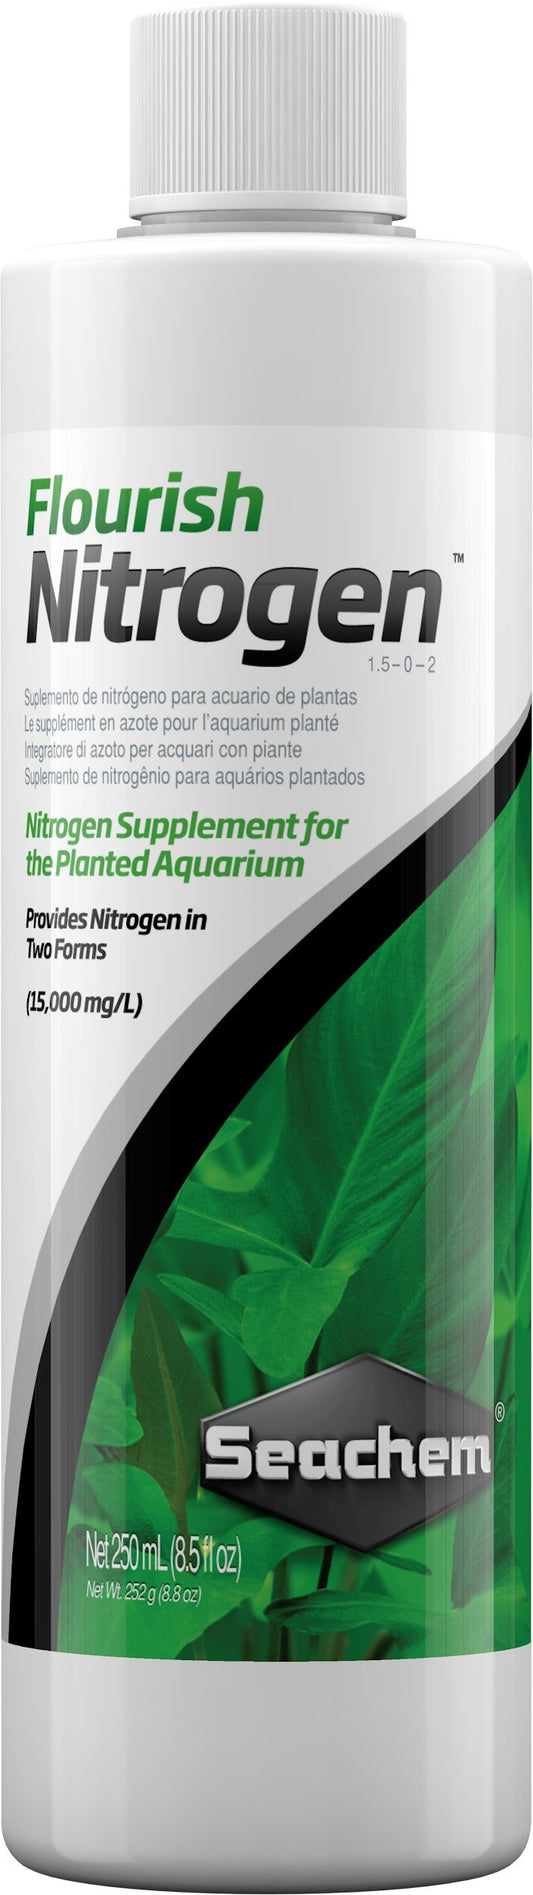 Flourish Nitrogen - Discus Roa Fish